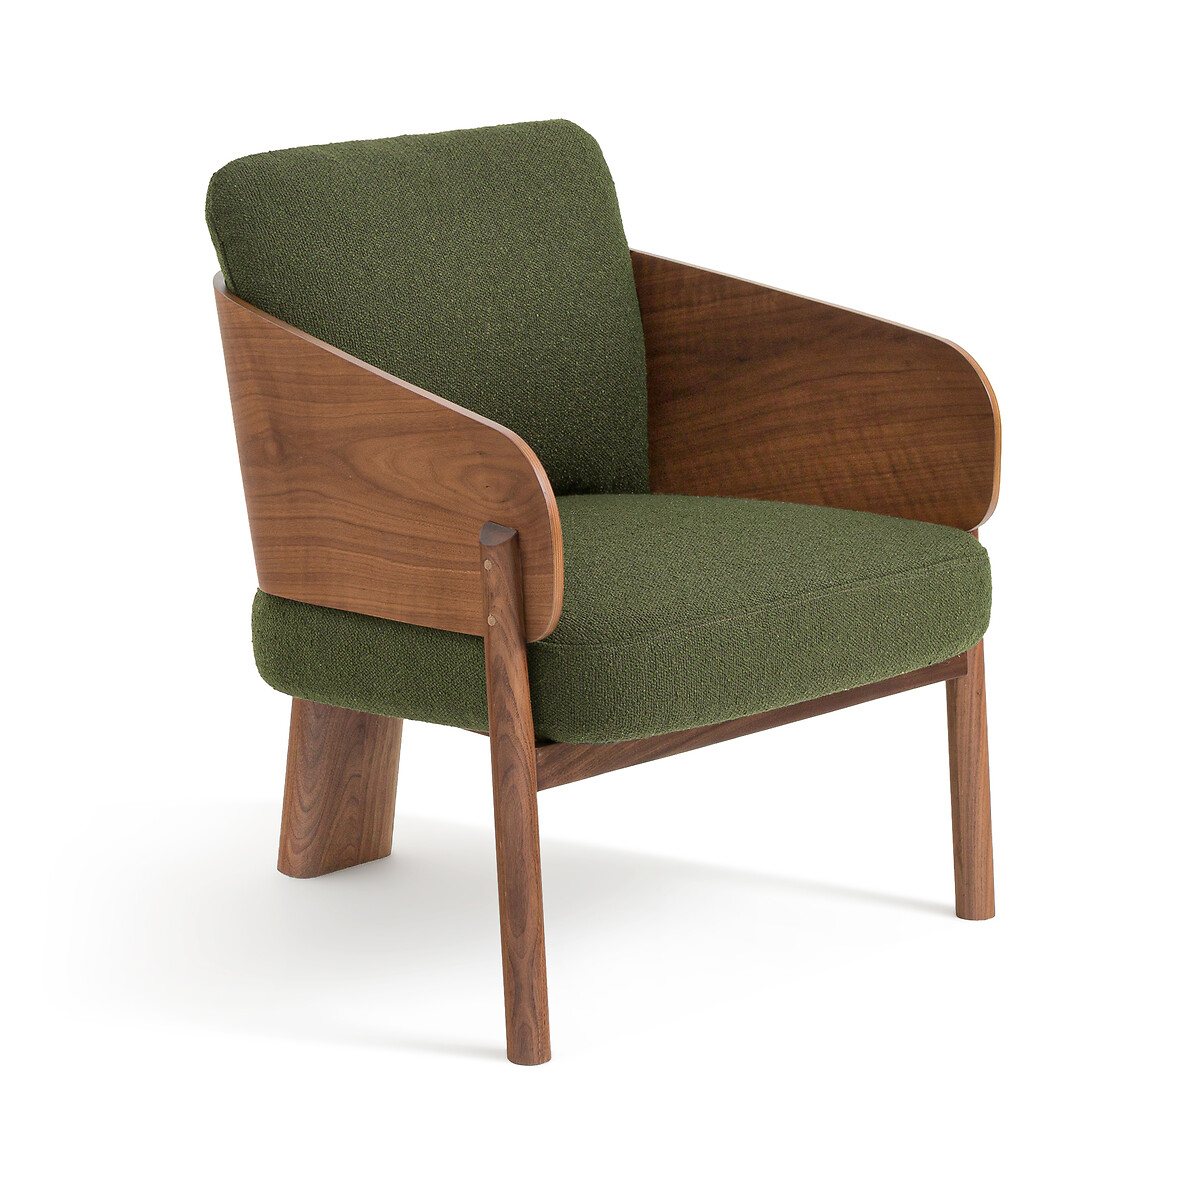 Кресло из орехового дерева ткани букле дизайн Э Галлина Marais единый размер зеленый стул с обивкой из буклированной ткани дизайн э галлина marais единый размер каштановый